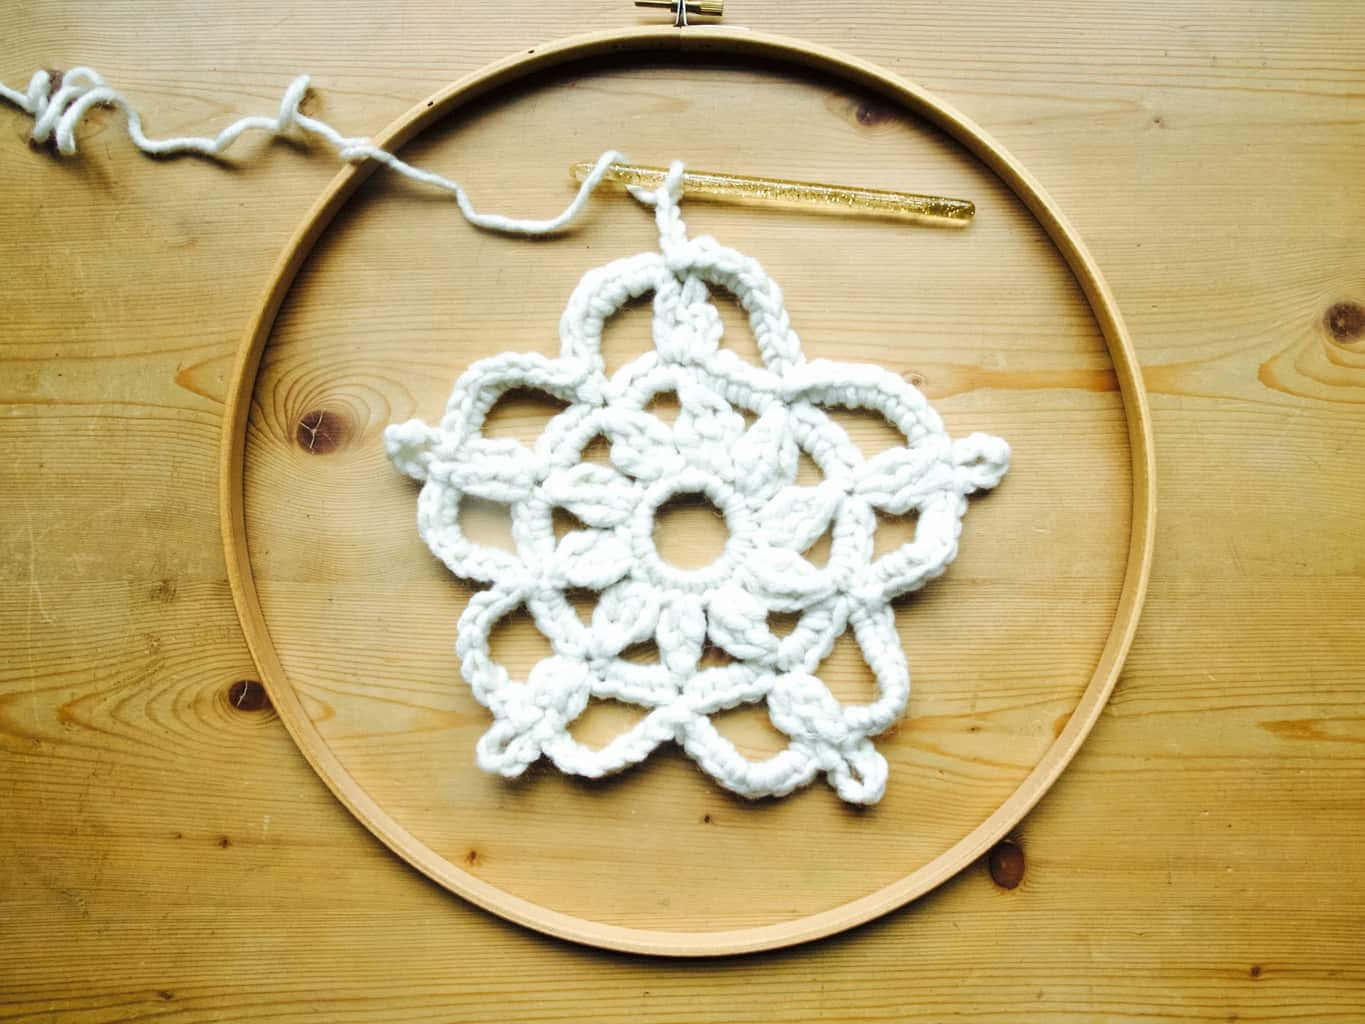 Imagende Una Flor Blanca En Crochet